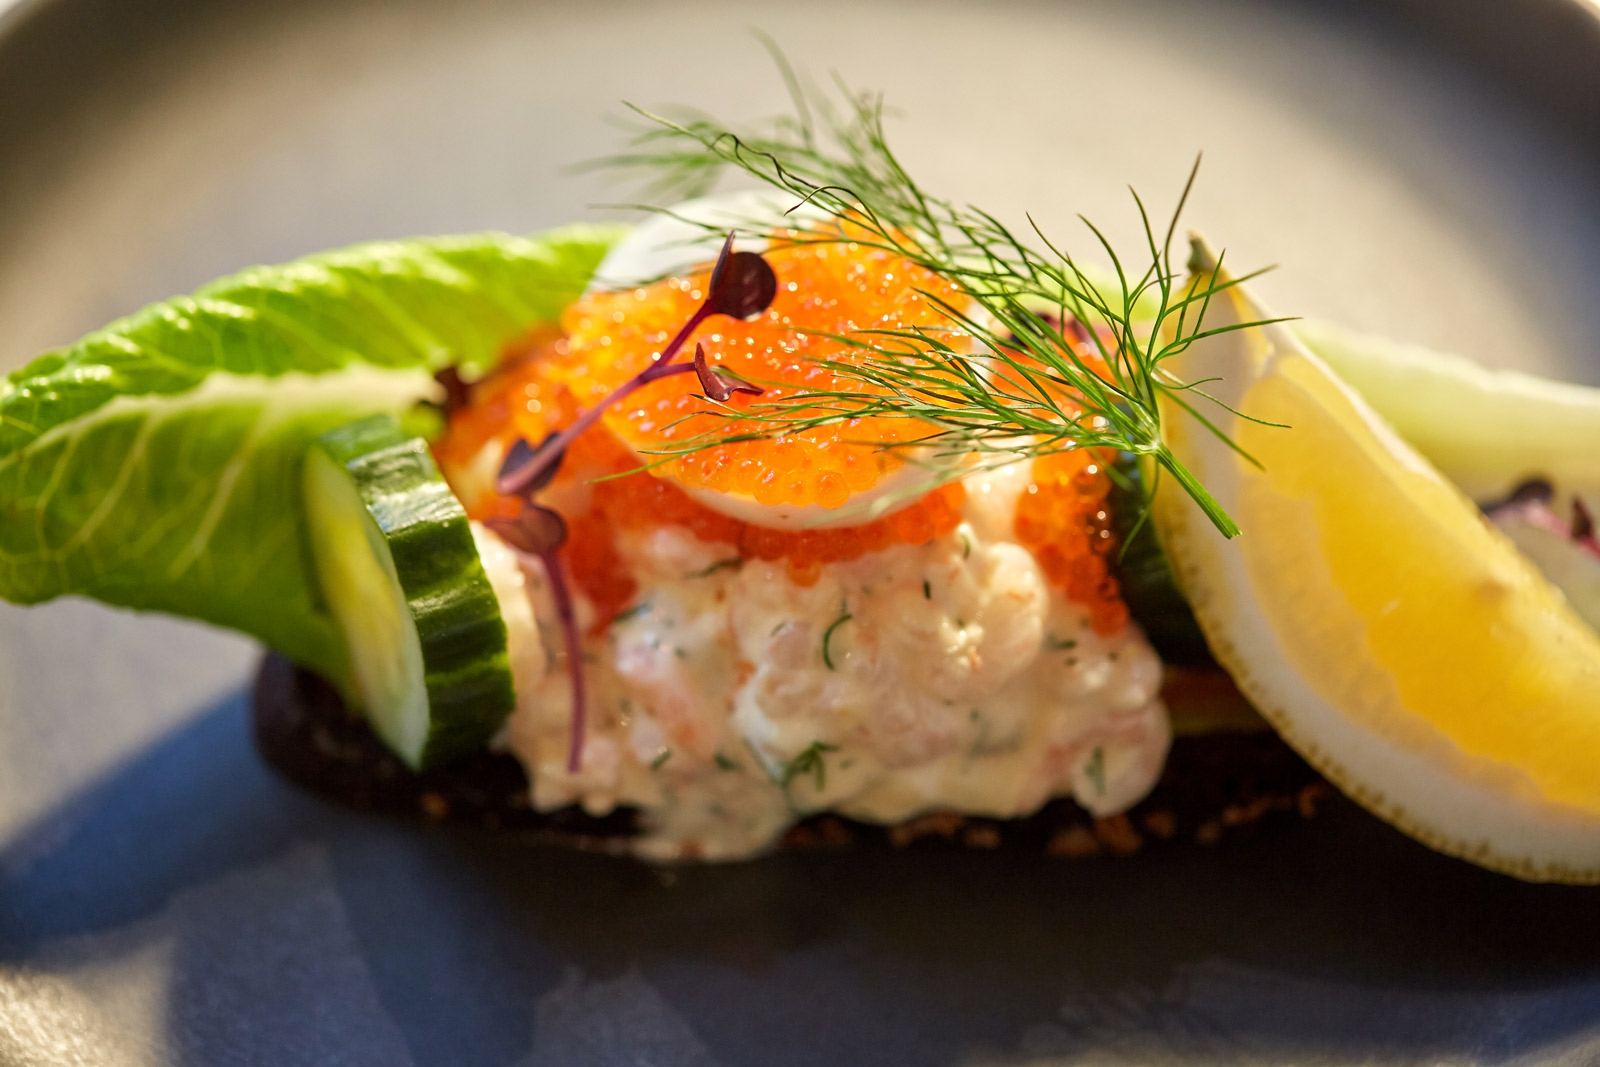 Danish Food New Nordic Cuisine